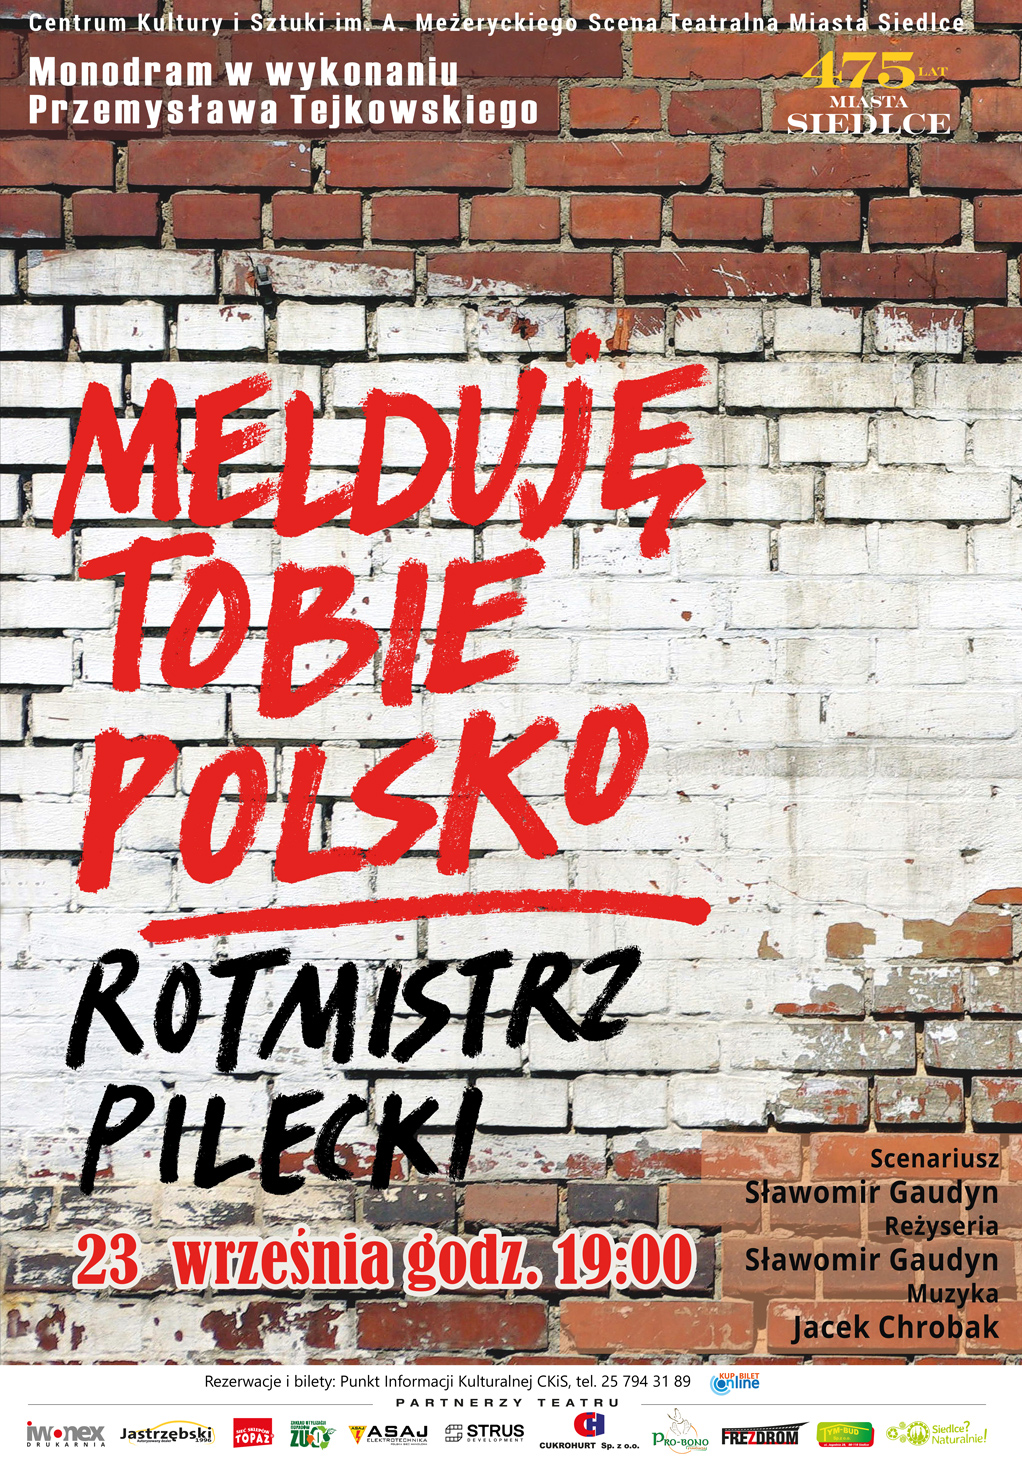 "Melduję Tobie Polsko..." - Teatralna opowieść o Witoldzie Pileckim 23 września na Scenie Teatralnej Miasta Siedlce